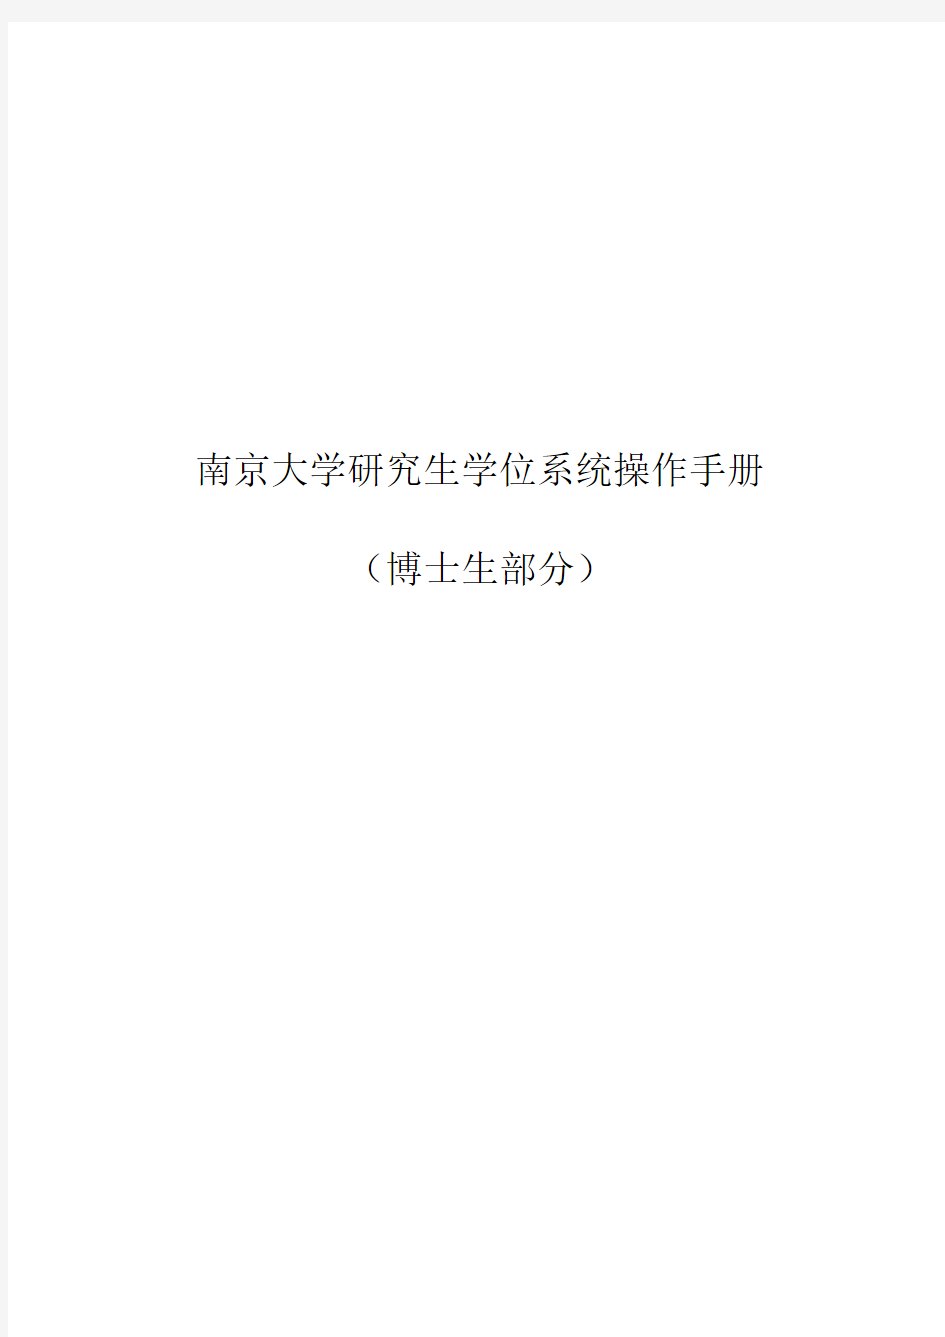 南京大学研究生学位系统操作手册(学生部分)v1.5